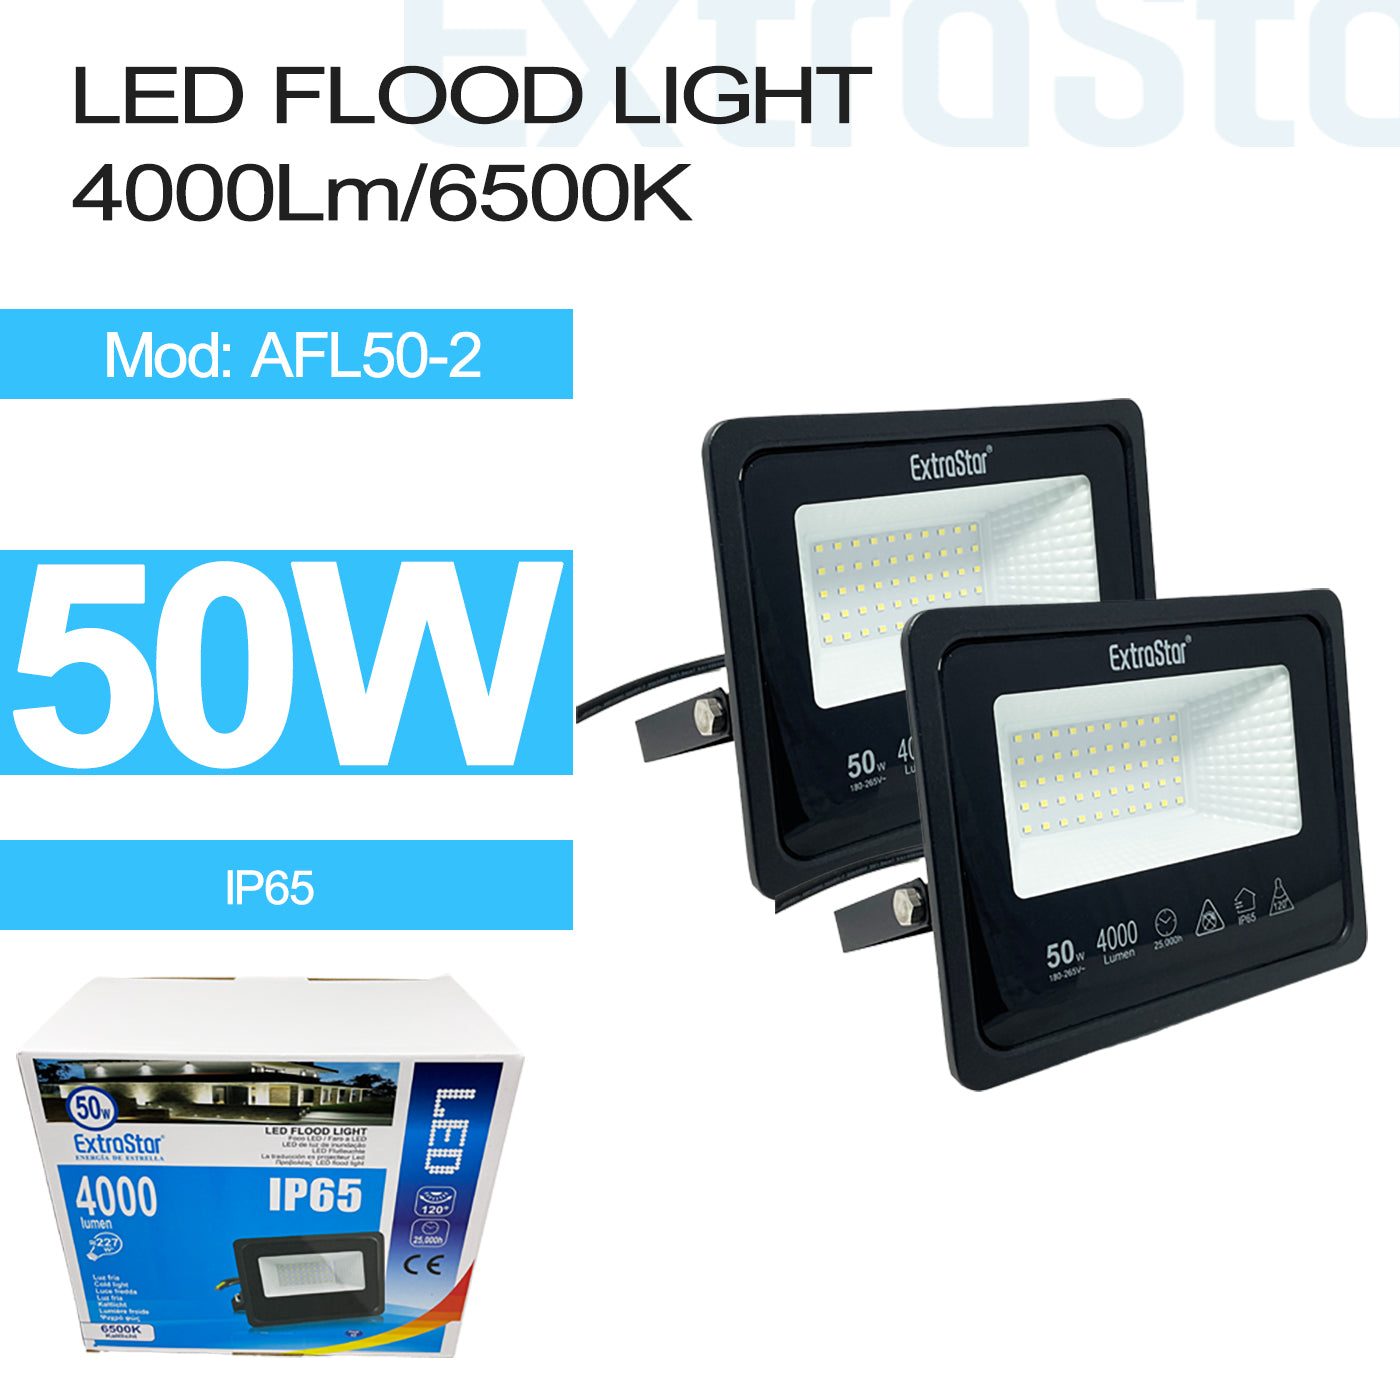 50 W LED Flood Light, 6500K, IP65, Pack of 2 (AFL50-2)